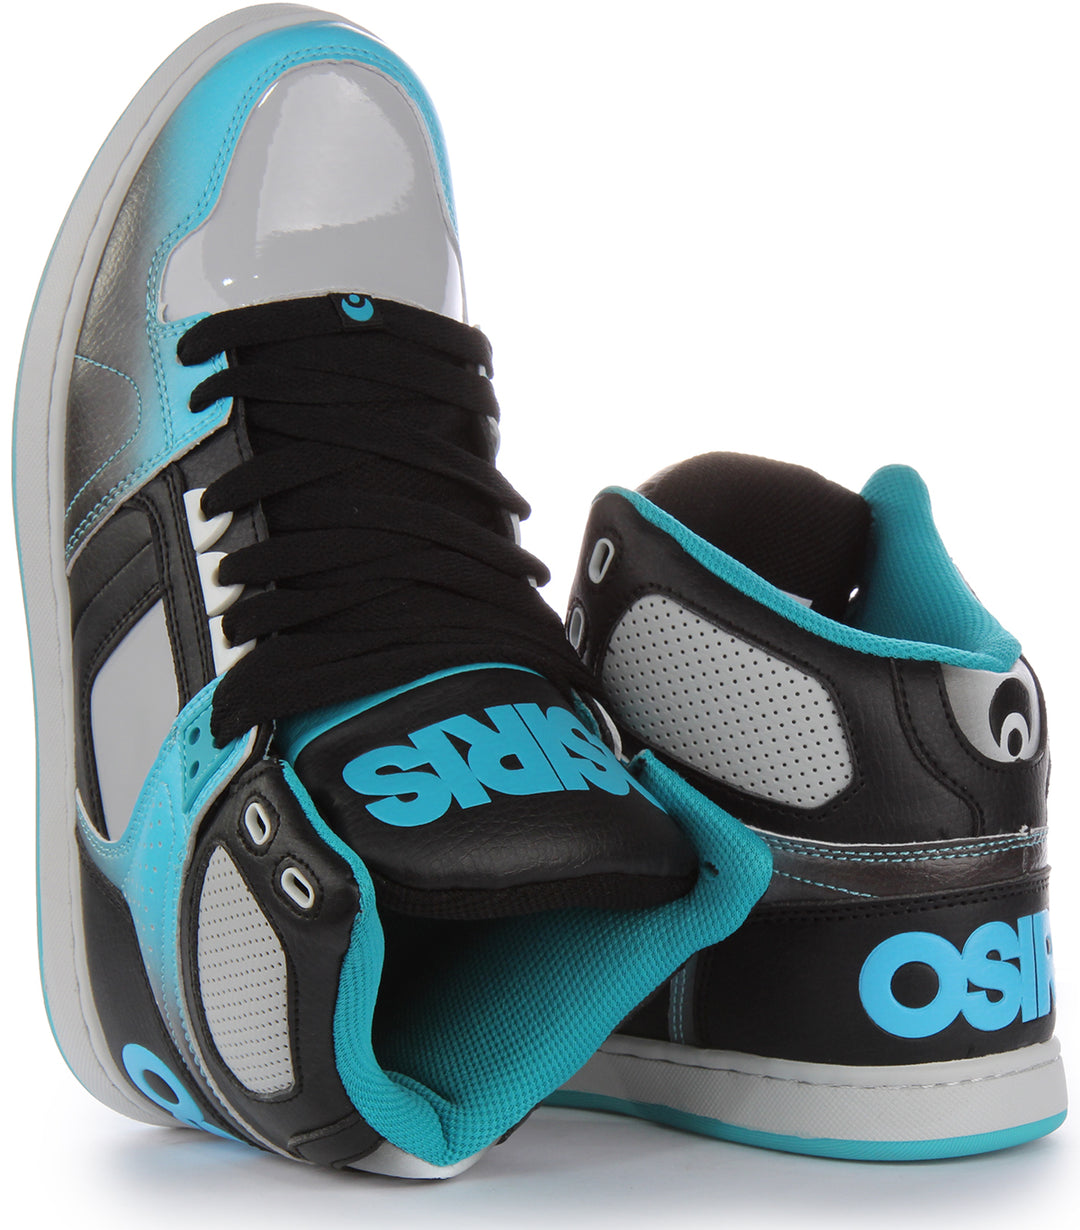 Osiris NYC 83 Clk Zapatillas de deporte con cordones para hombre en negro azul